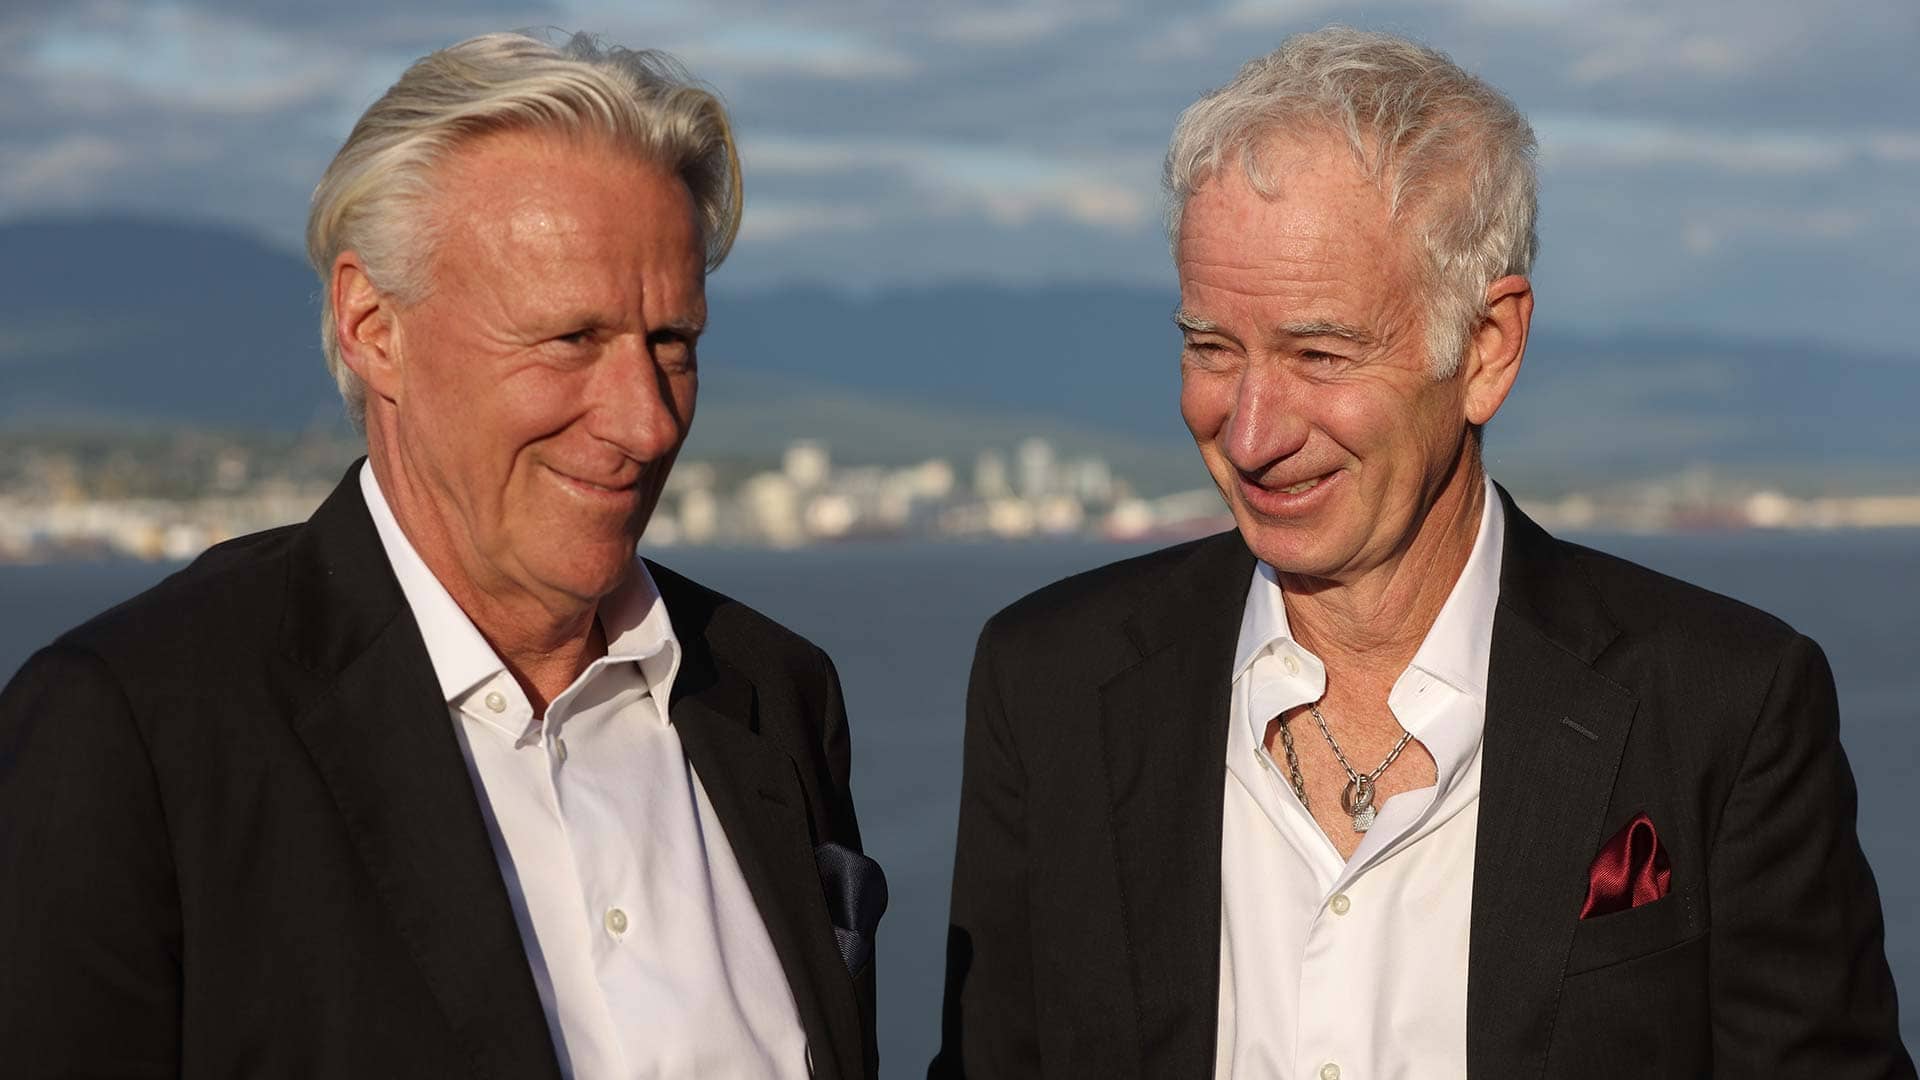 Bjorn Borg & John McEnroe: Meet The Laver Cup Captains